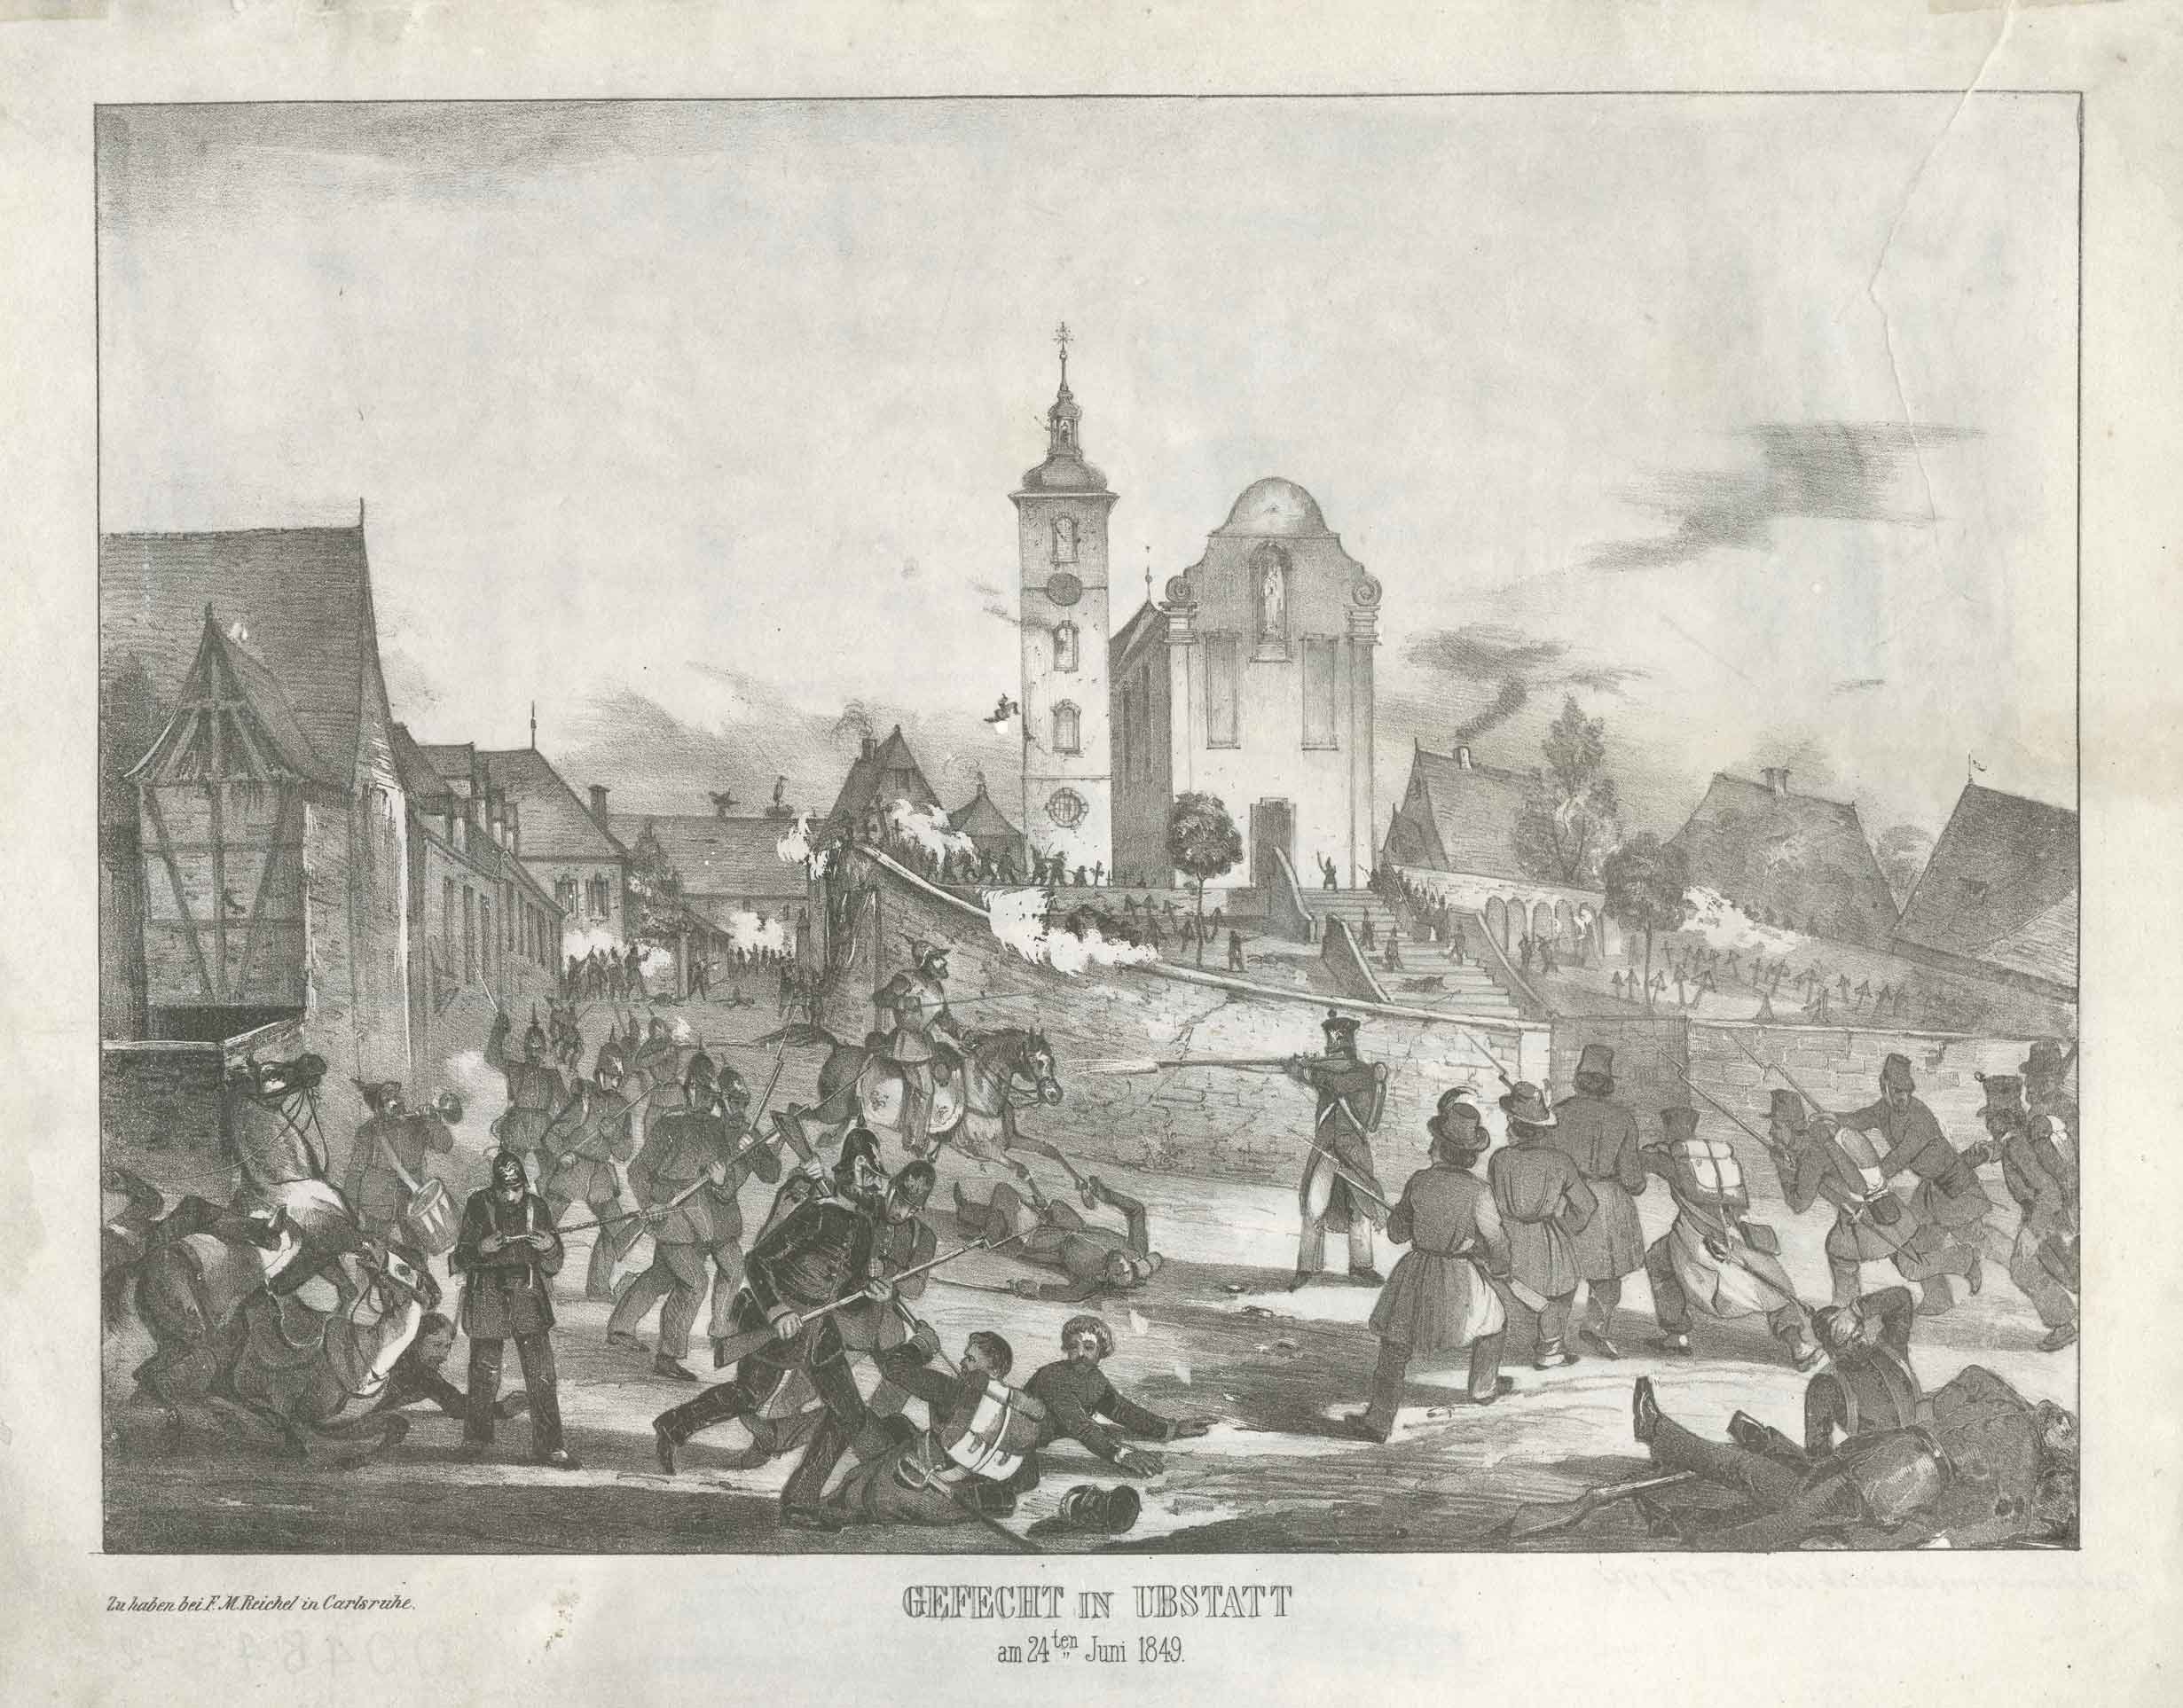 "Gefecht in Ubstatt am 24ten Juni 1849" (Wehrgeschichtliches Museum Rastatt CC BY-NC-SA)